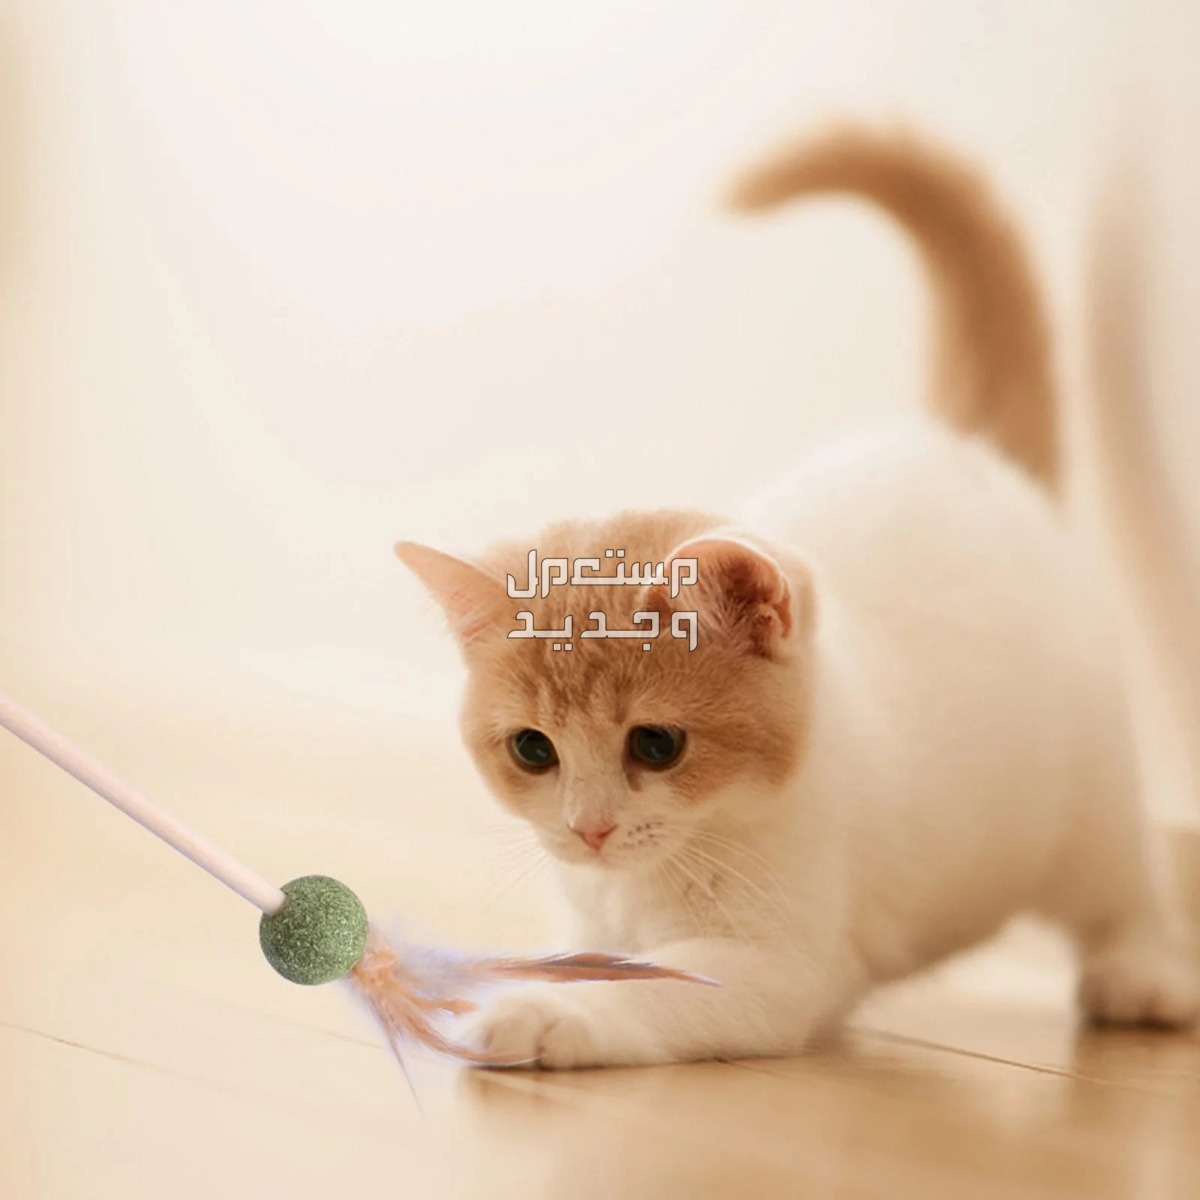 لمحبي القطط - تعرف على أفضل العاب قطط متحركة في العراق قطة تلعب بالريشة